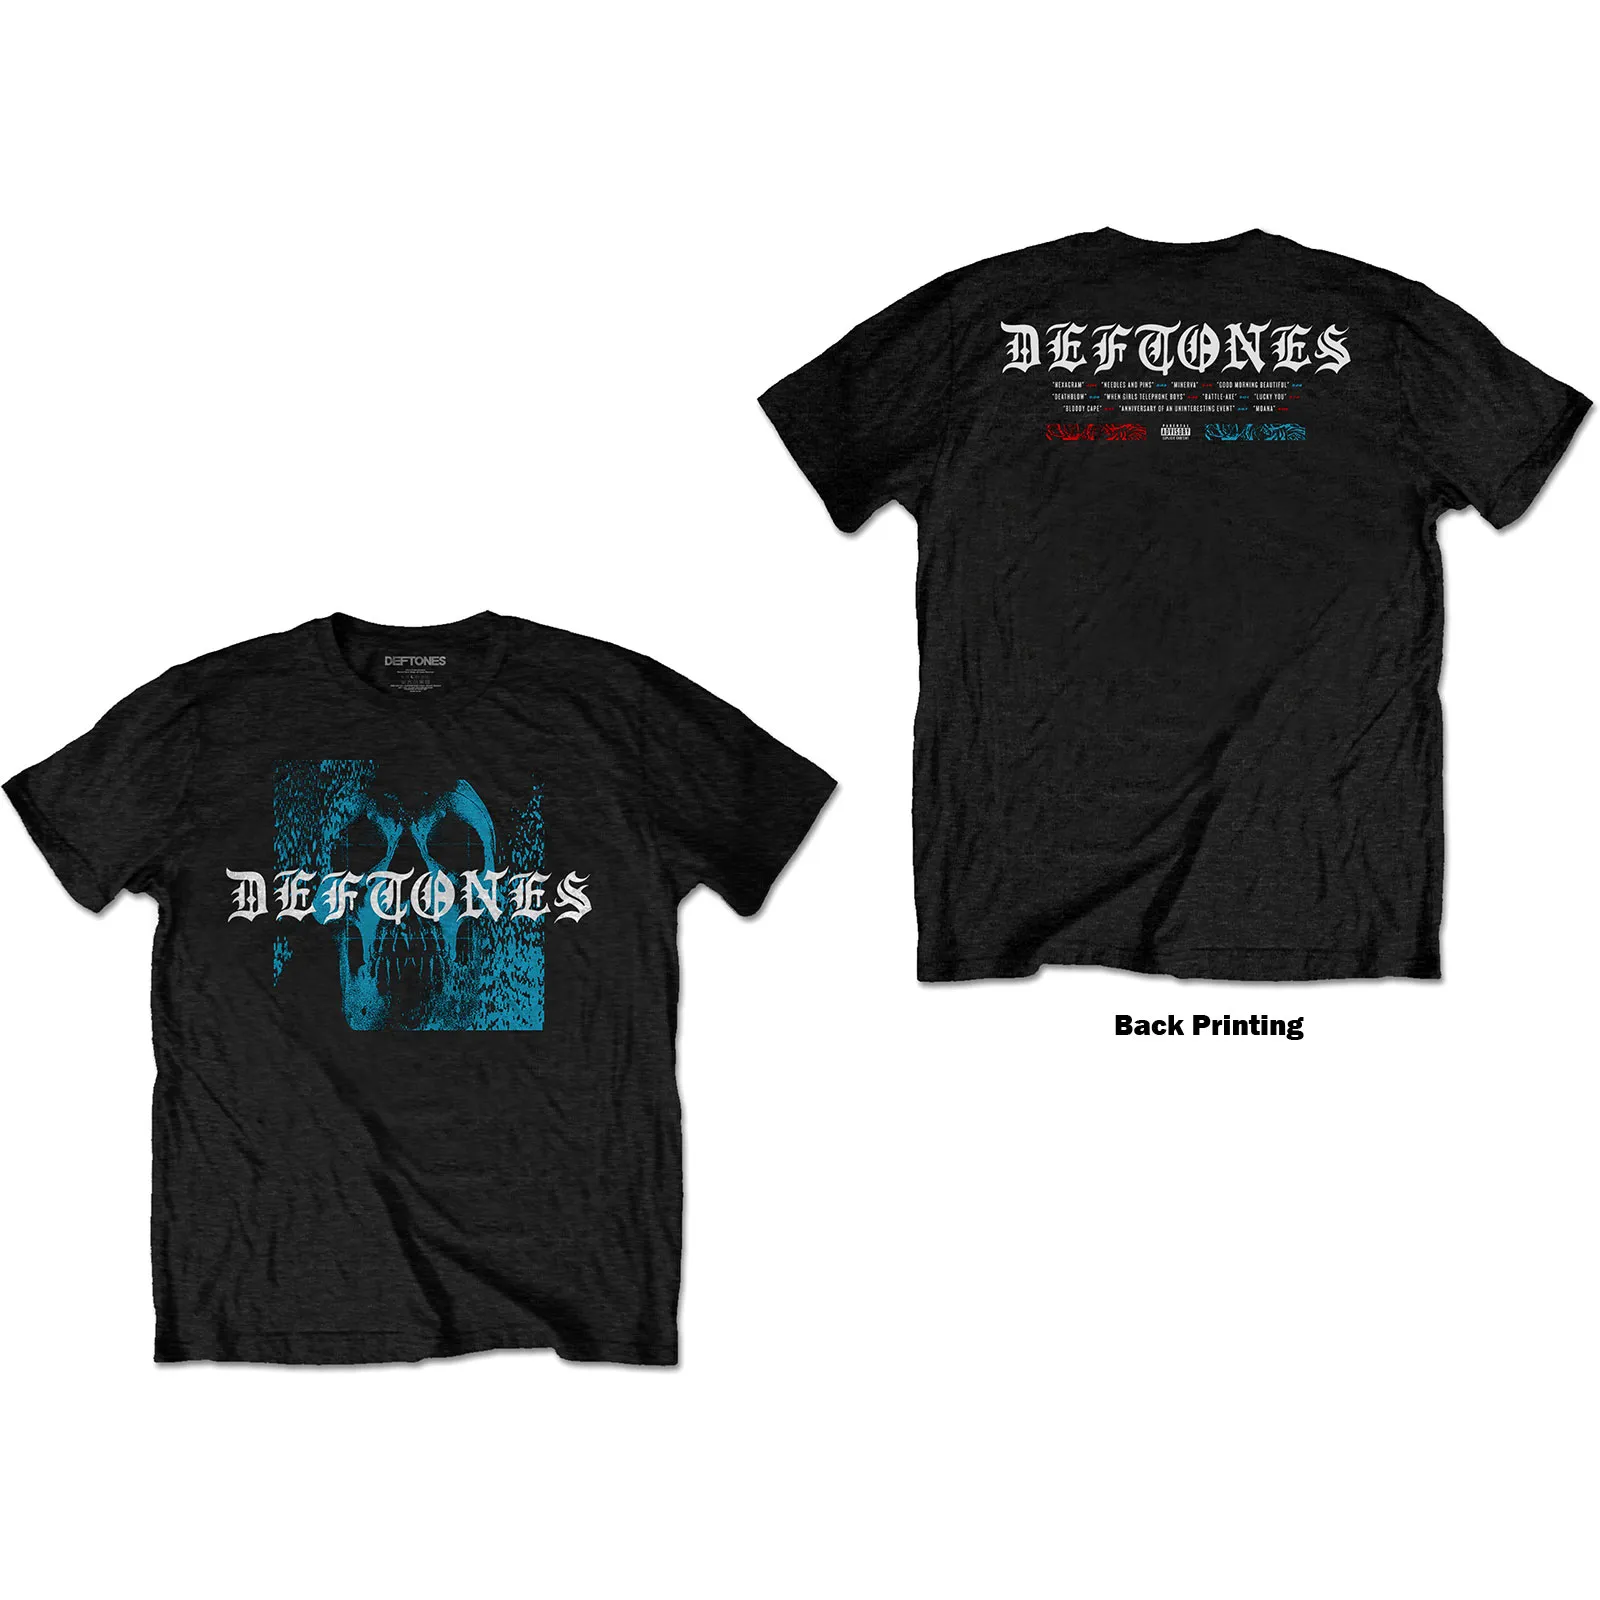 Deftones - Unisex T-Shirt Static Skull Back Print artwork